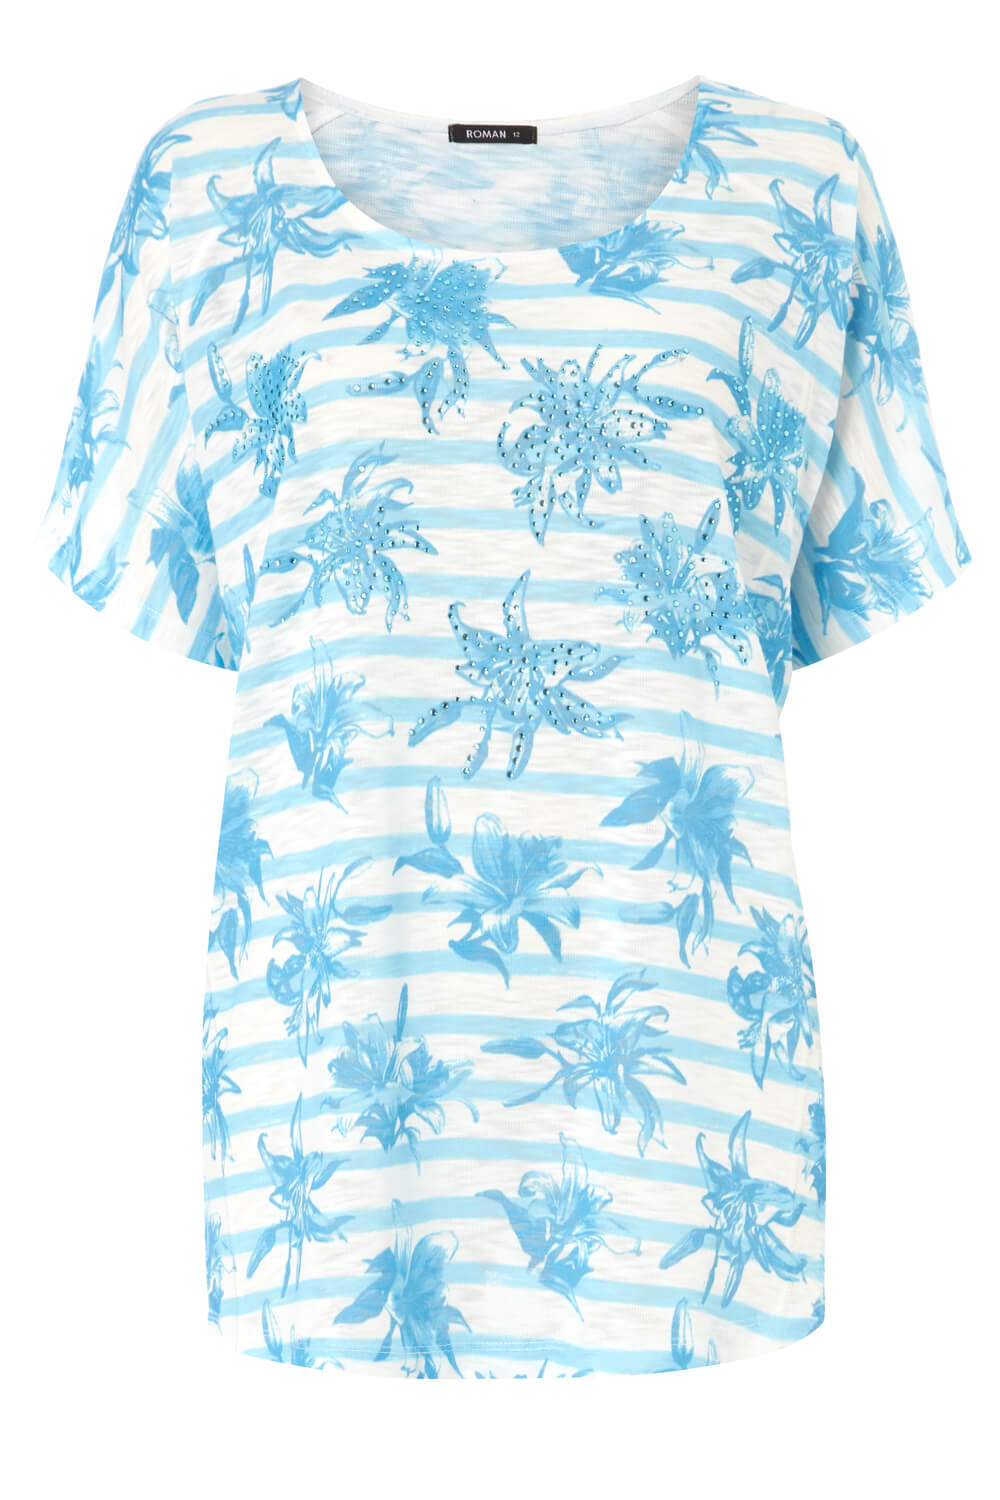 Blue Floral Stripe Embellished T-Shirt, Image 4 of 4